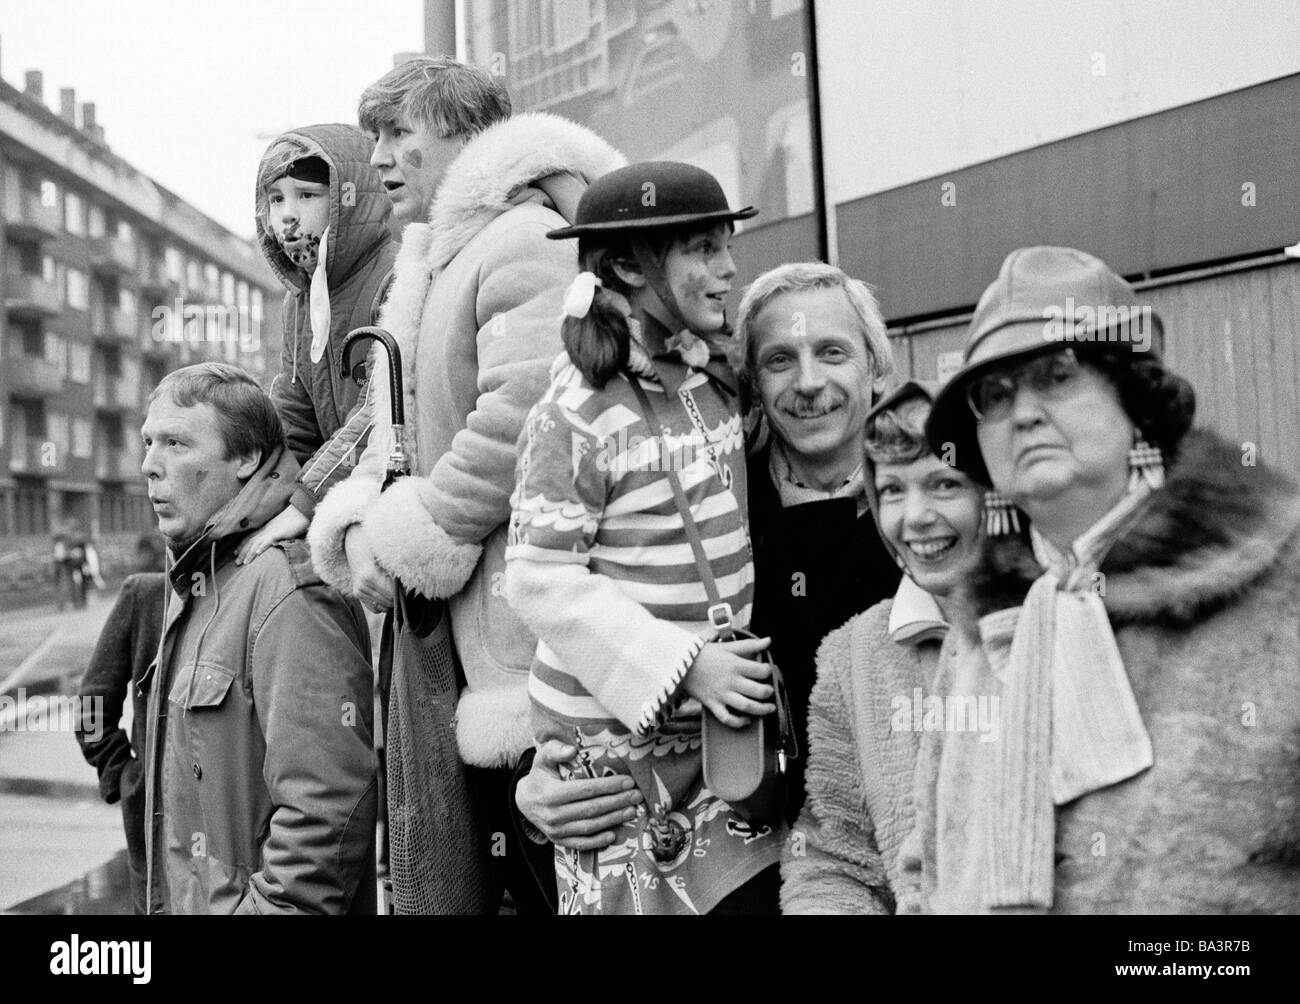 Ottanta, foto in bianco e nero, persone, carnevale renano, lunedì di Rose Parade 1981, i visitatori a guardare la parata, due uomini di età compresa tra 25 a 35 anni, due donne di età compresa tra i 20 e i 30 anni, la donna più anziana, di età compresa tra 60 a 70 anni, ragazzo, di età compresa tra i 8 e i 10 anni, ragazza, di età compresa tra i 10 e i 12 anni, D-Duesseldorf, Reno, Renania settentrionale-Vestfalia Foto Stock